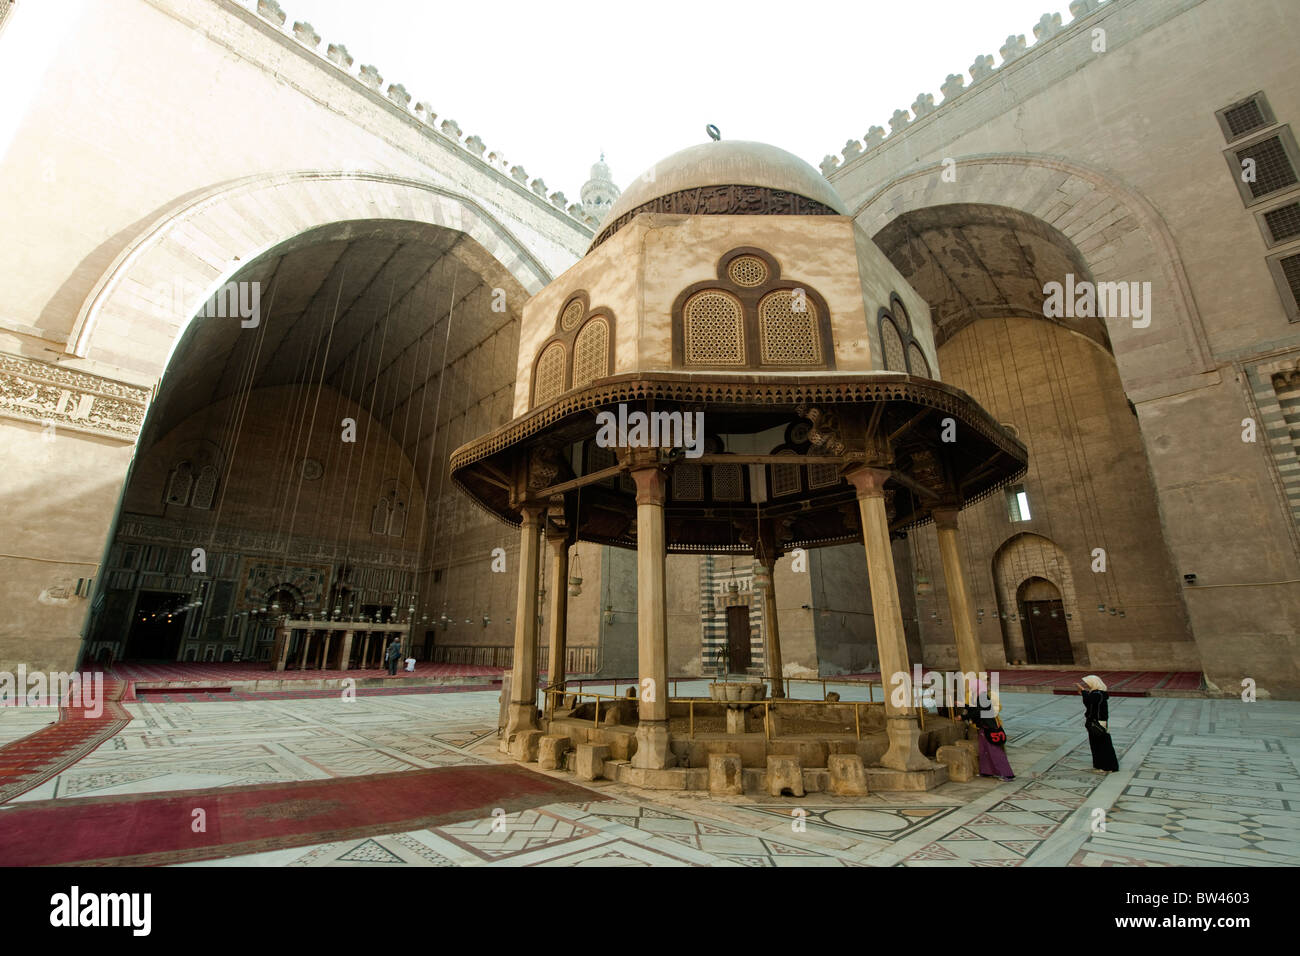 Aegypten ha, Kairo, Mosque-Madrassa del sultano Hassan, Reinigungsbrunnen im Hof der Moschee Foto Stock